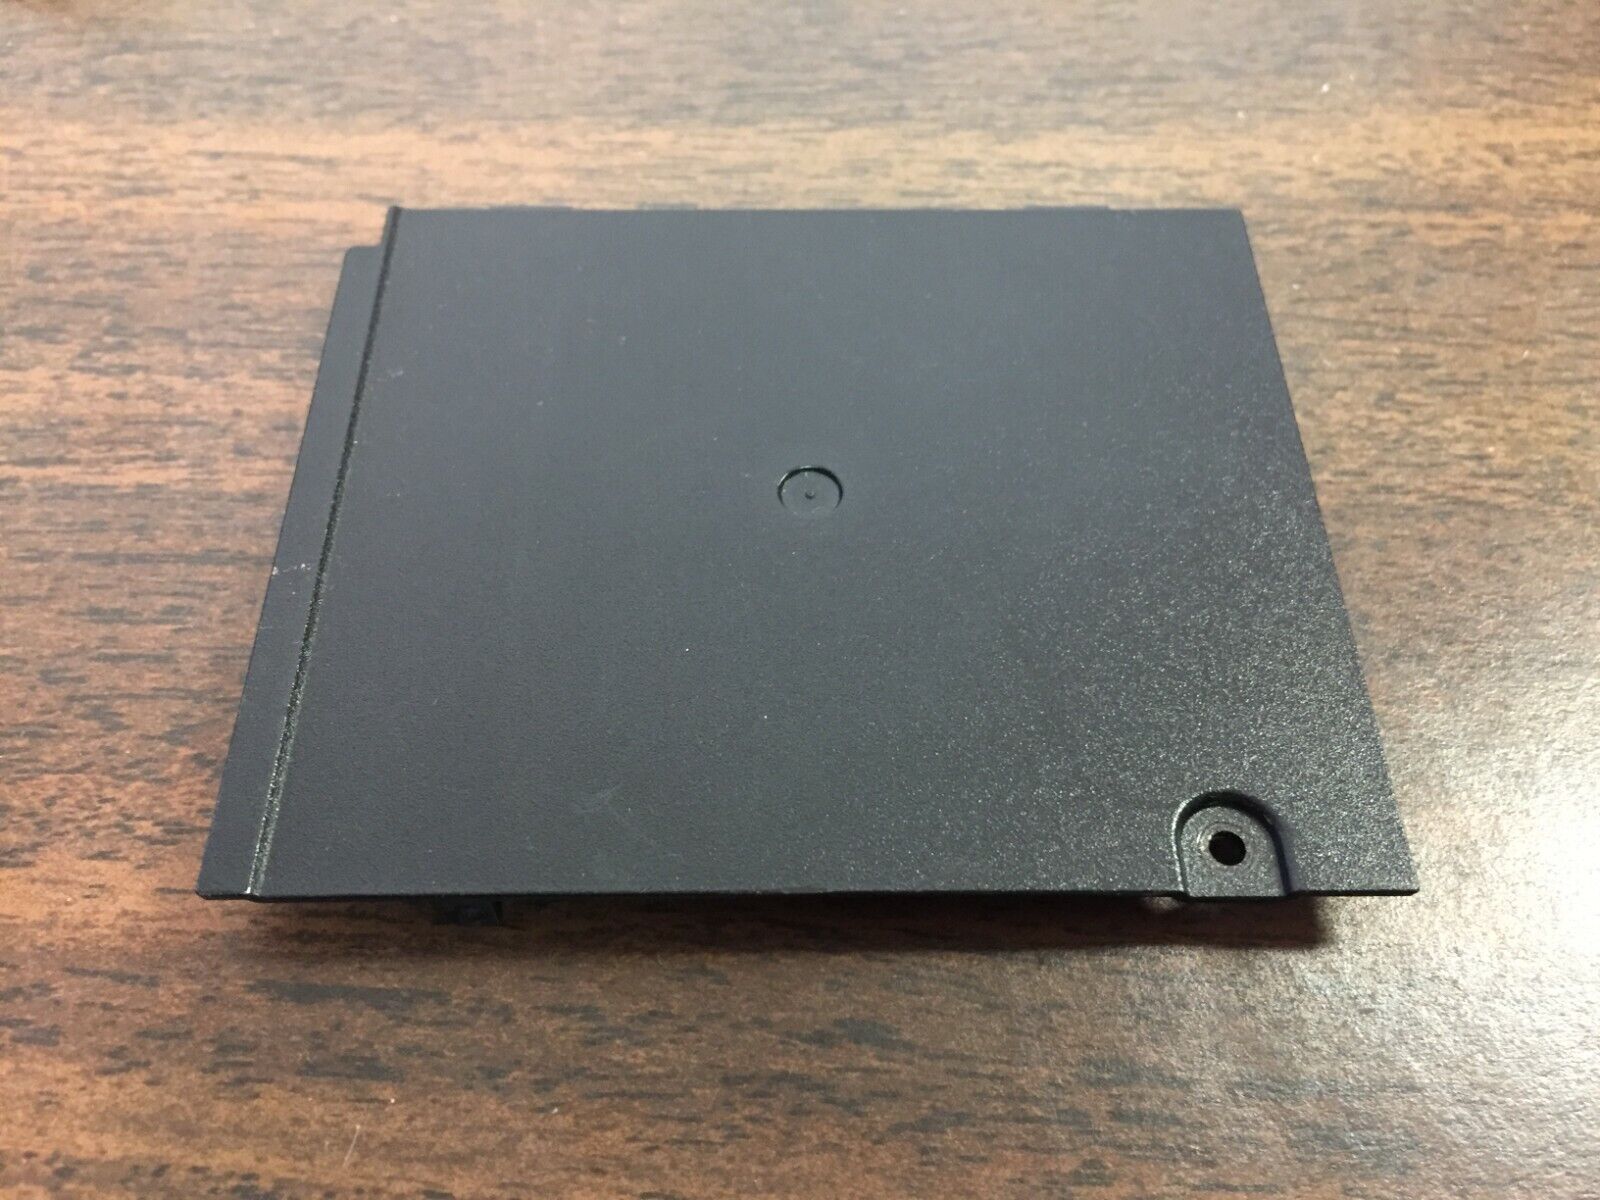 OEM Fujitsu LifeBook T731 Memory Cover